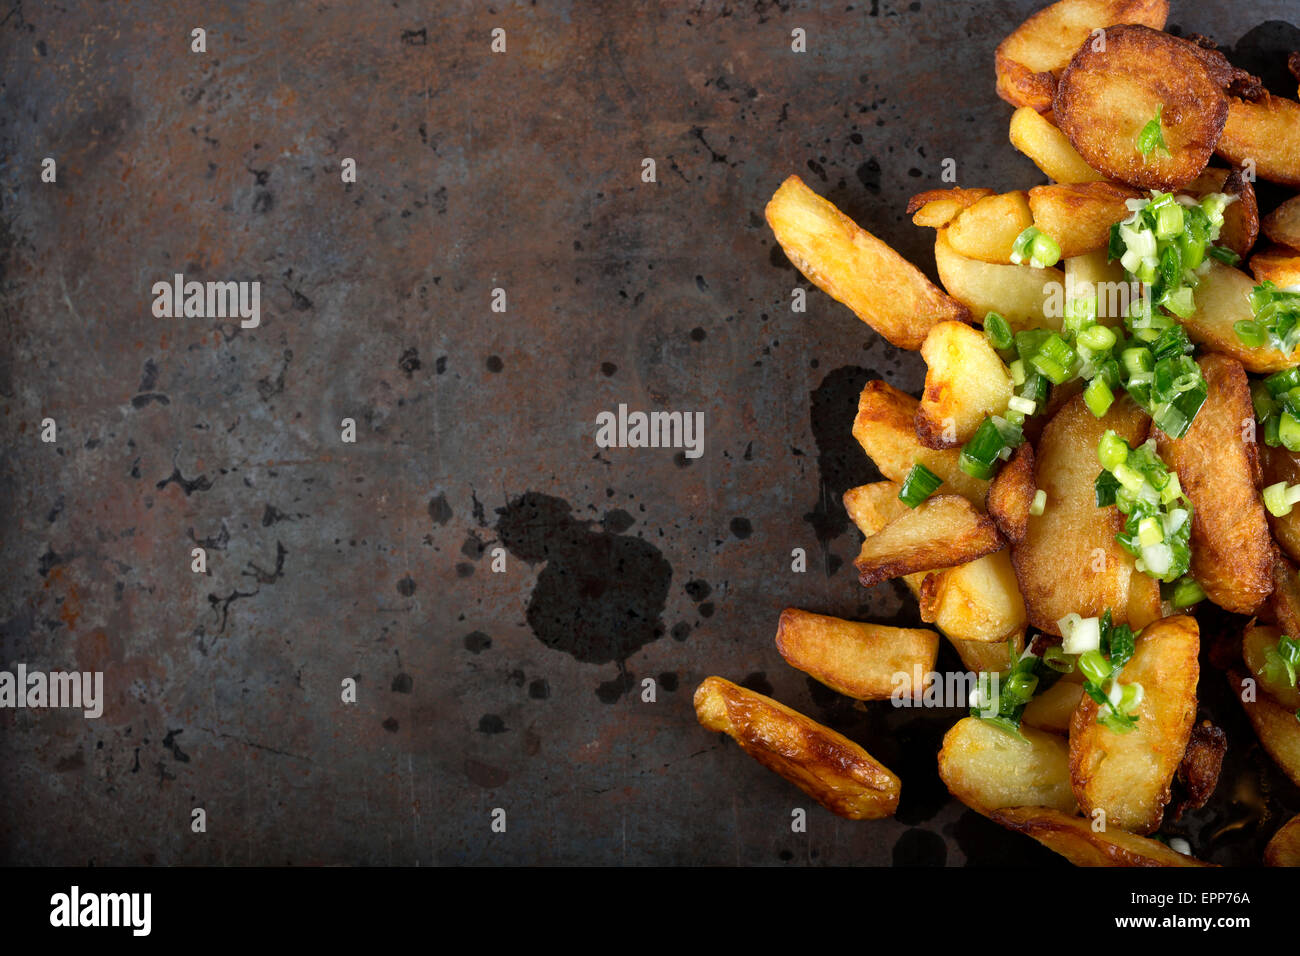 Frische hausgemachte knusprig gebratene Kartoffel Wedges mit grünem Knoblauch - Textfreiraum Stockfoto